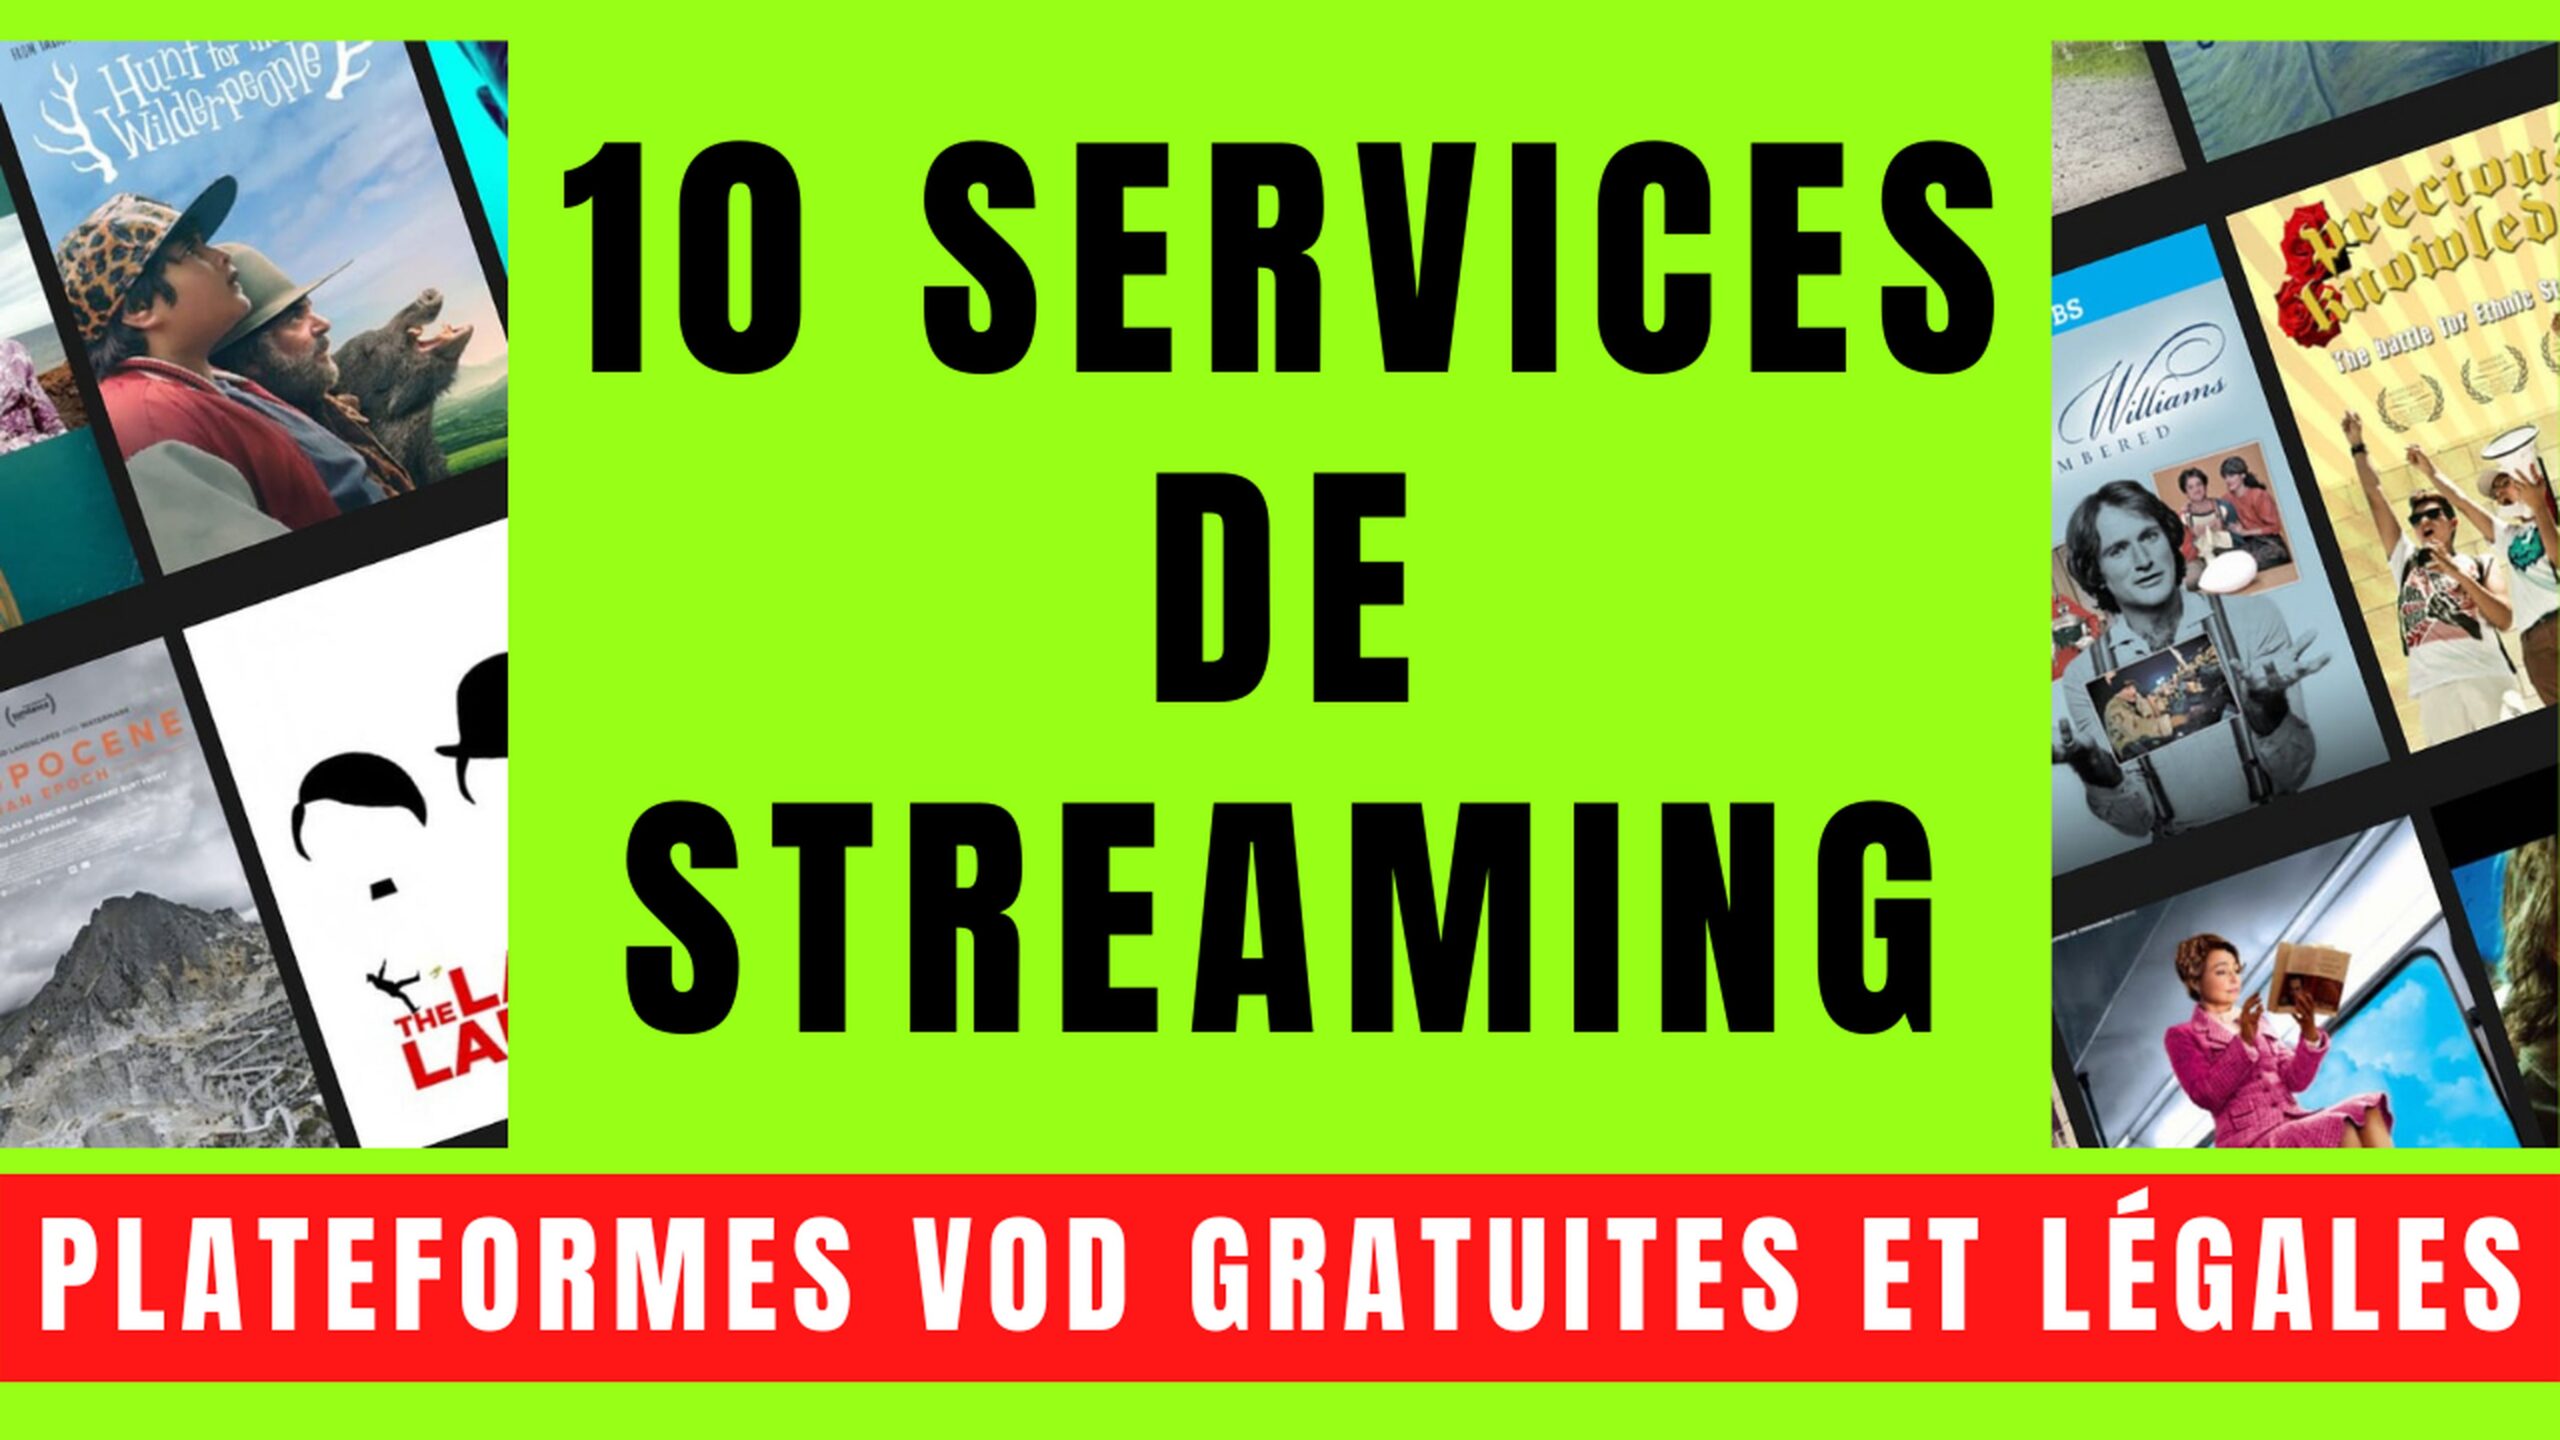 10 SERVICES VOD avec STREAMING GRATUIT et LÉGAL 11